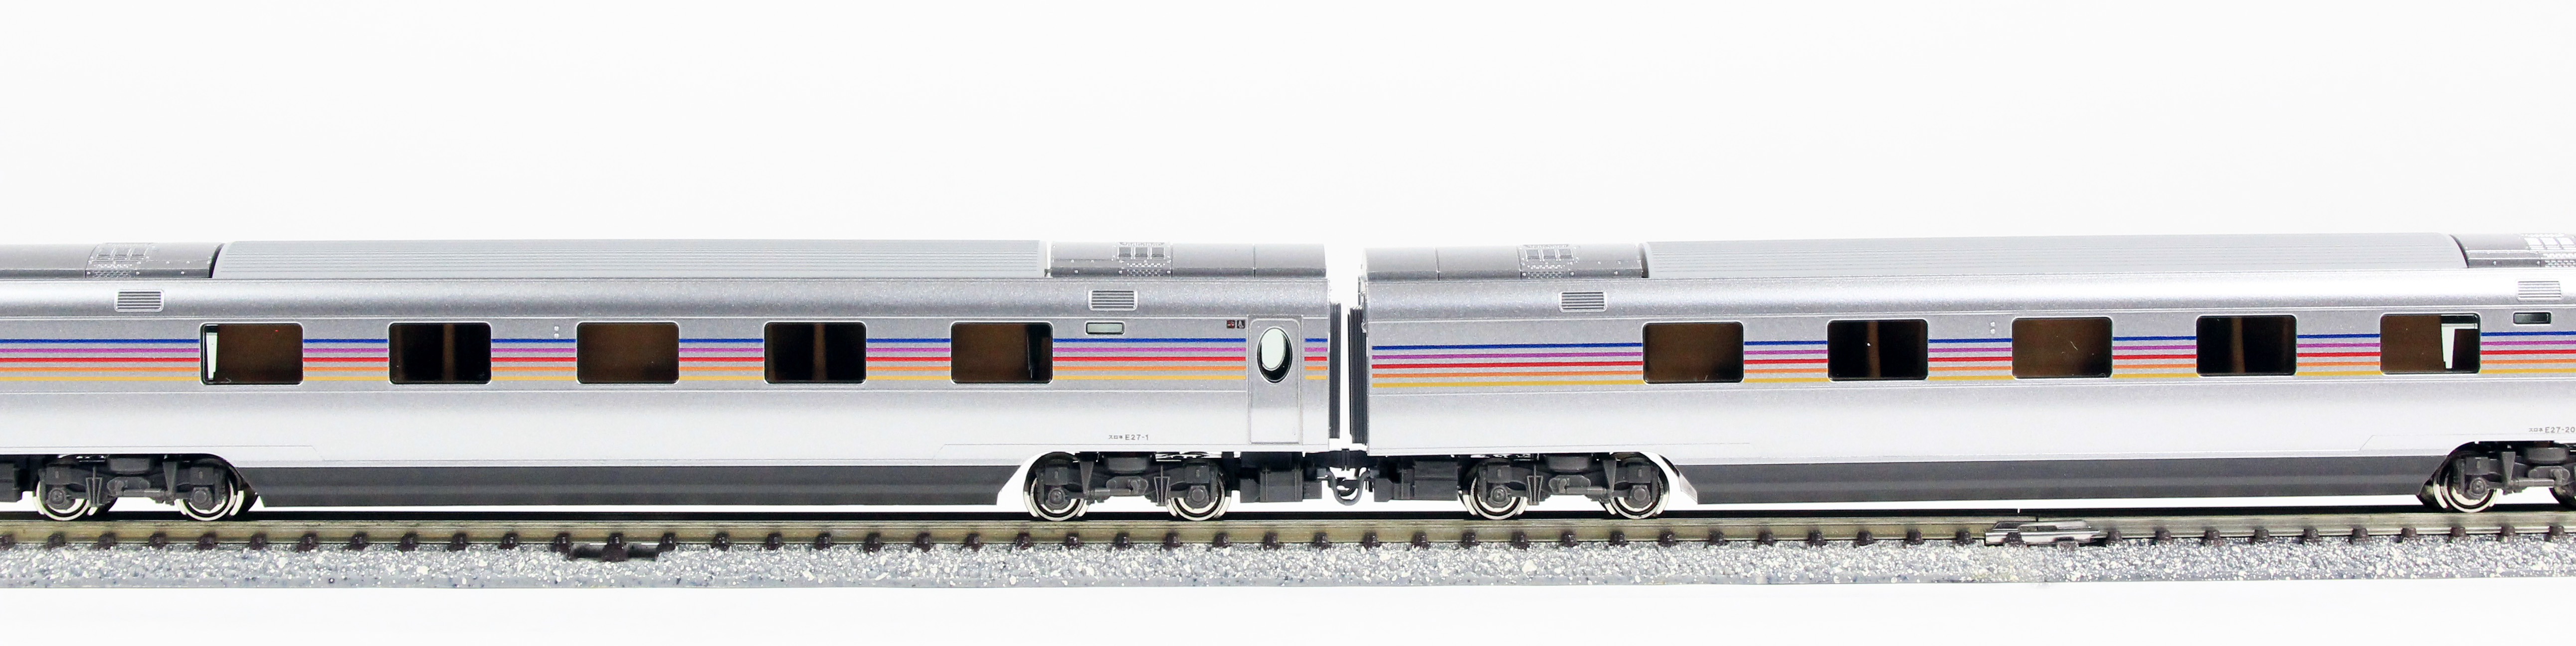 KATO 10-835 カシオペア 増結セットB 6両 鉄道模型 Nゲージ タムタム